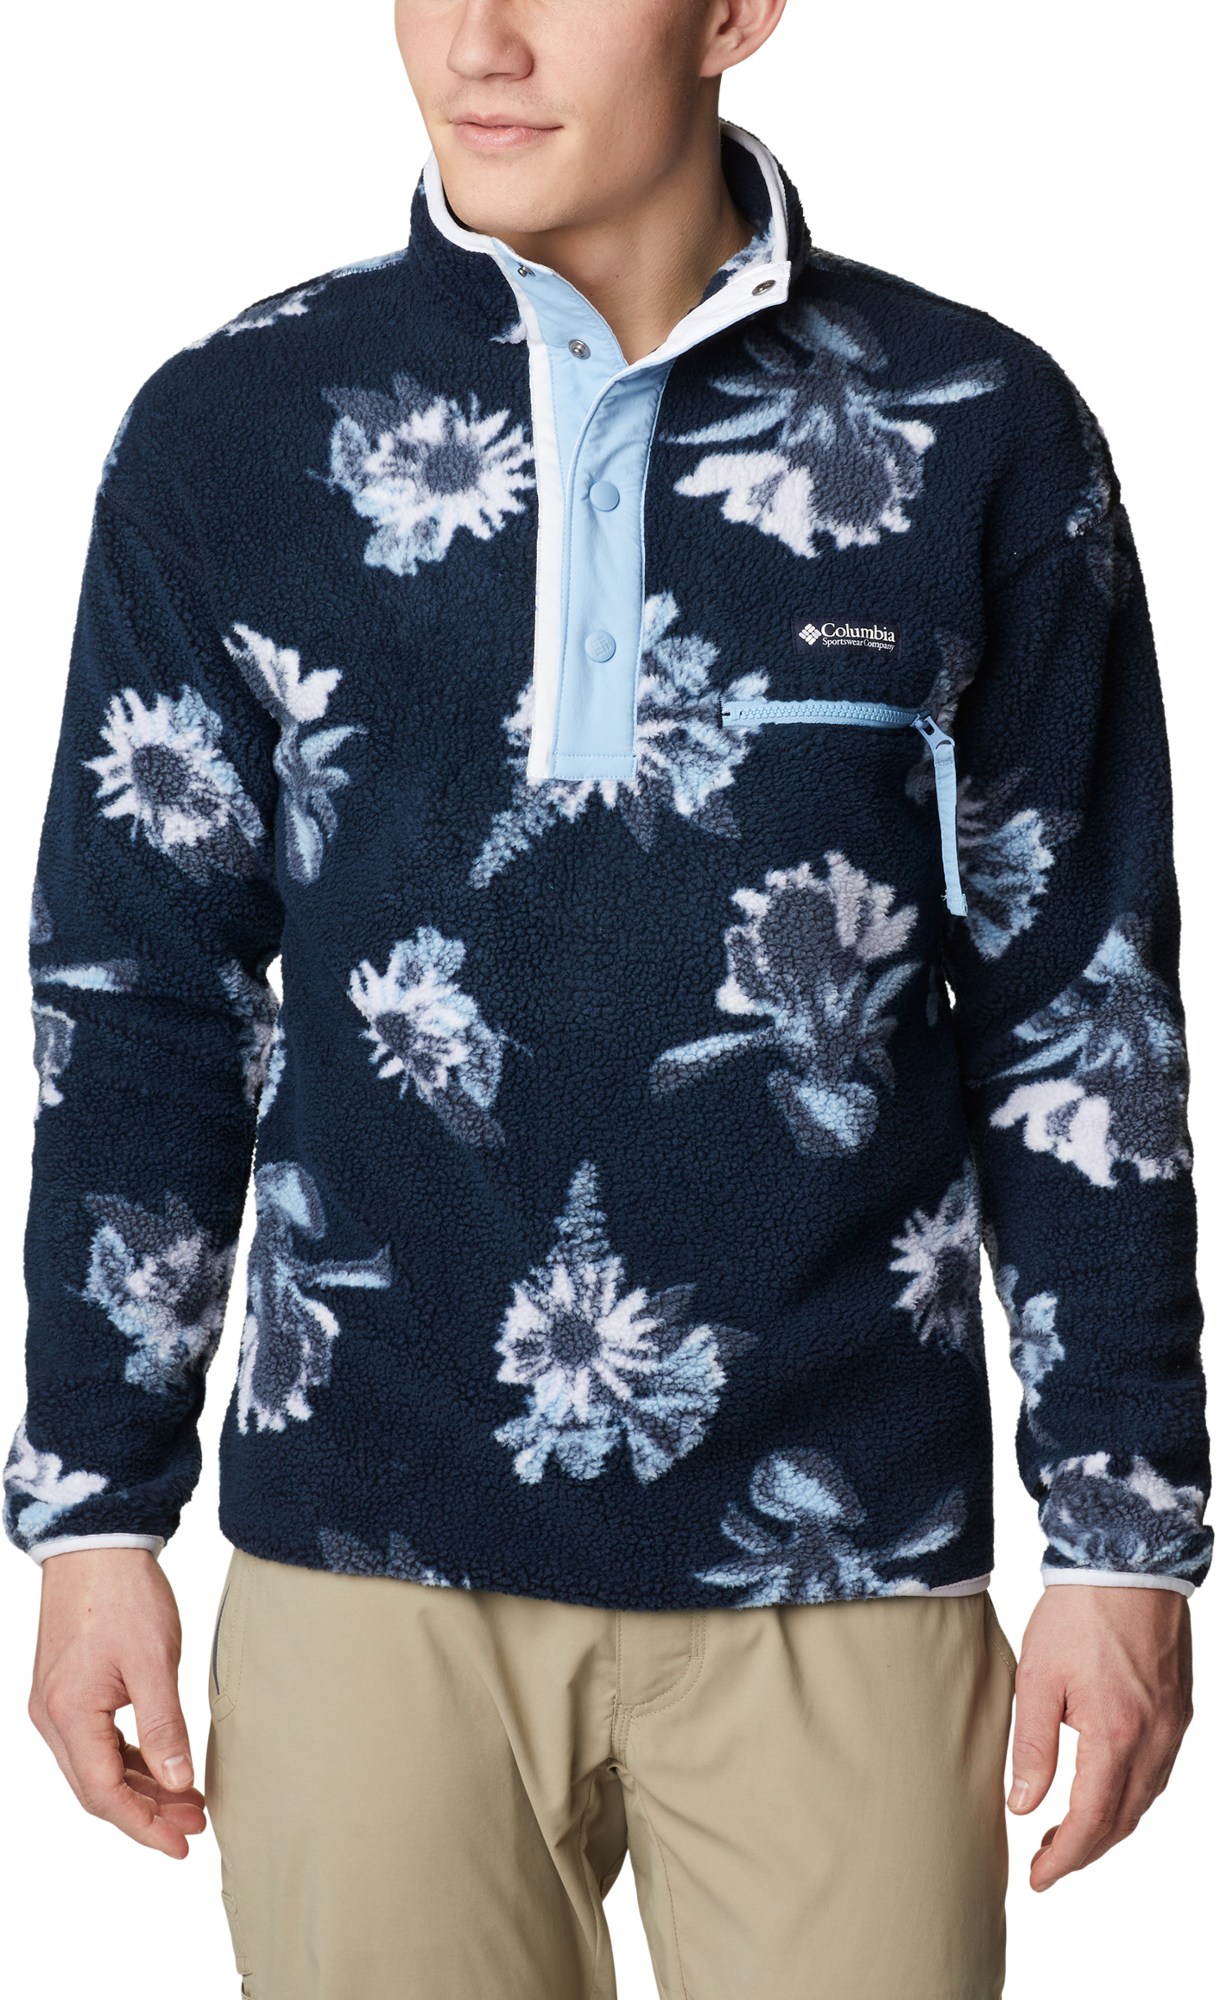 Флисовый пуловер Helvetia с полузастежкой - мужской Columbia, синий женский кашемировый пуловер ажурный пуловер в китайском ретро стиле с полувысоким воротником и дисковыми пуговицами осень зима